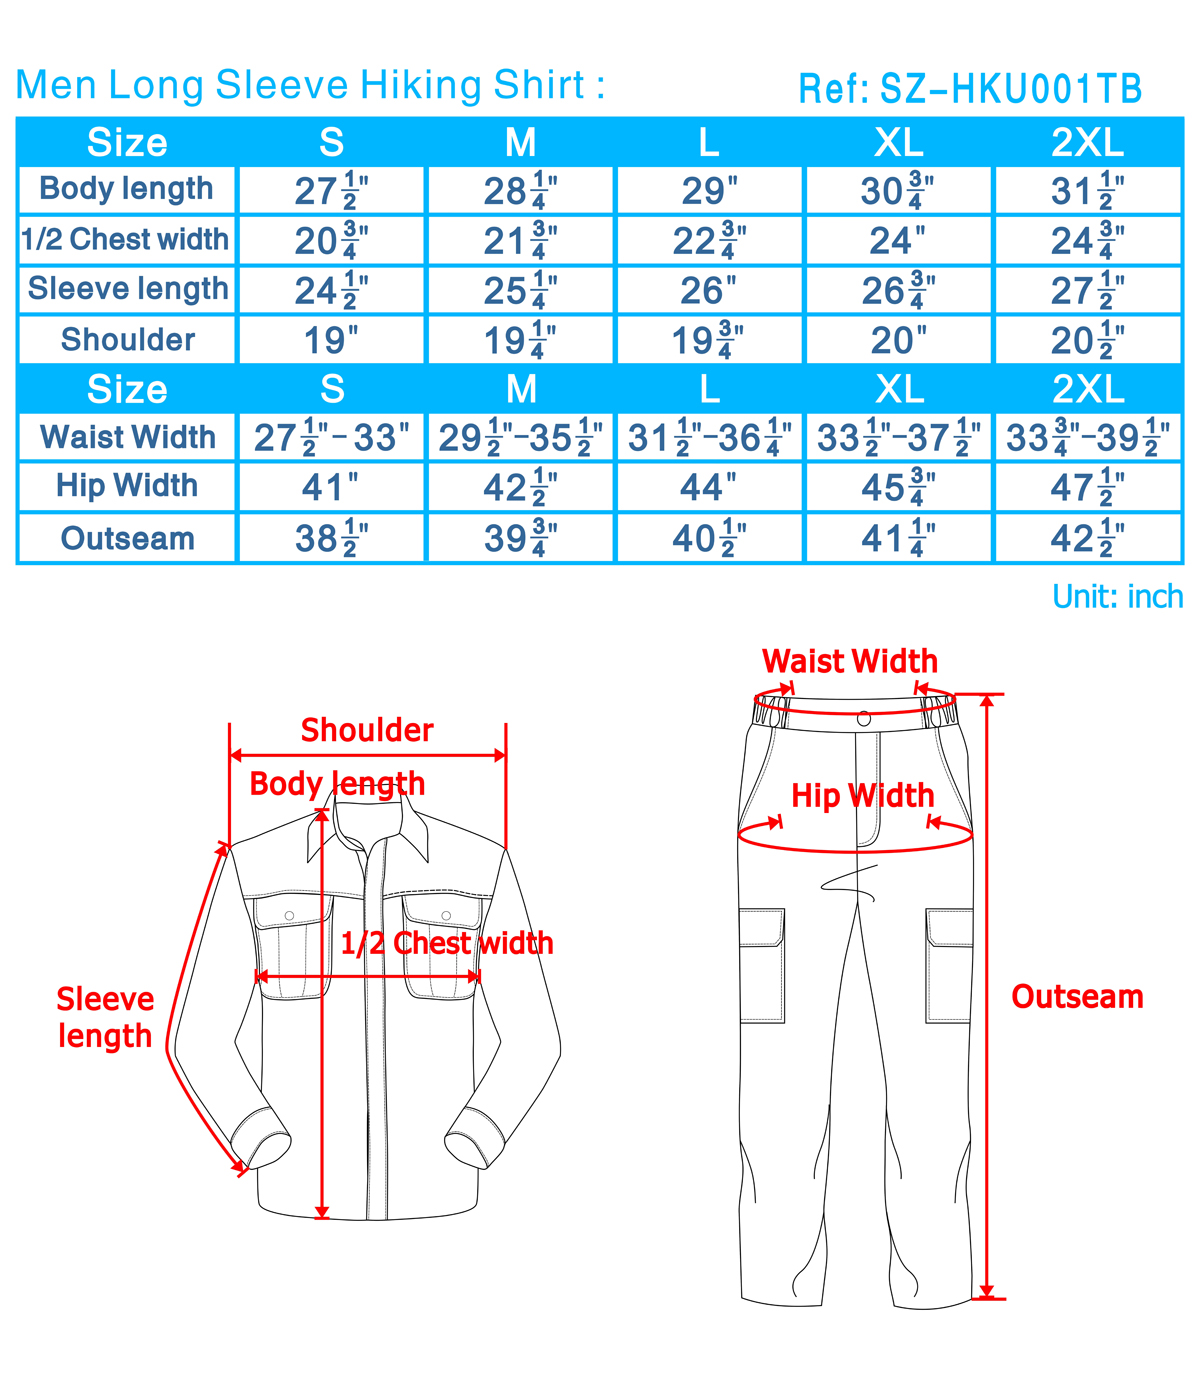 2xl Pants Size Chart